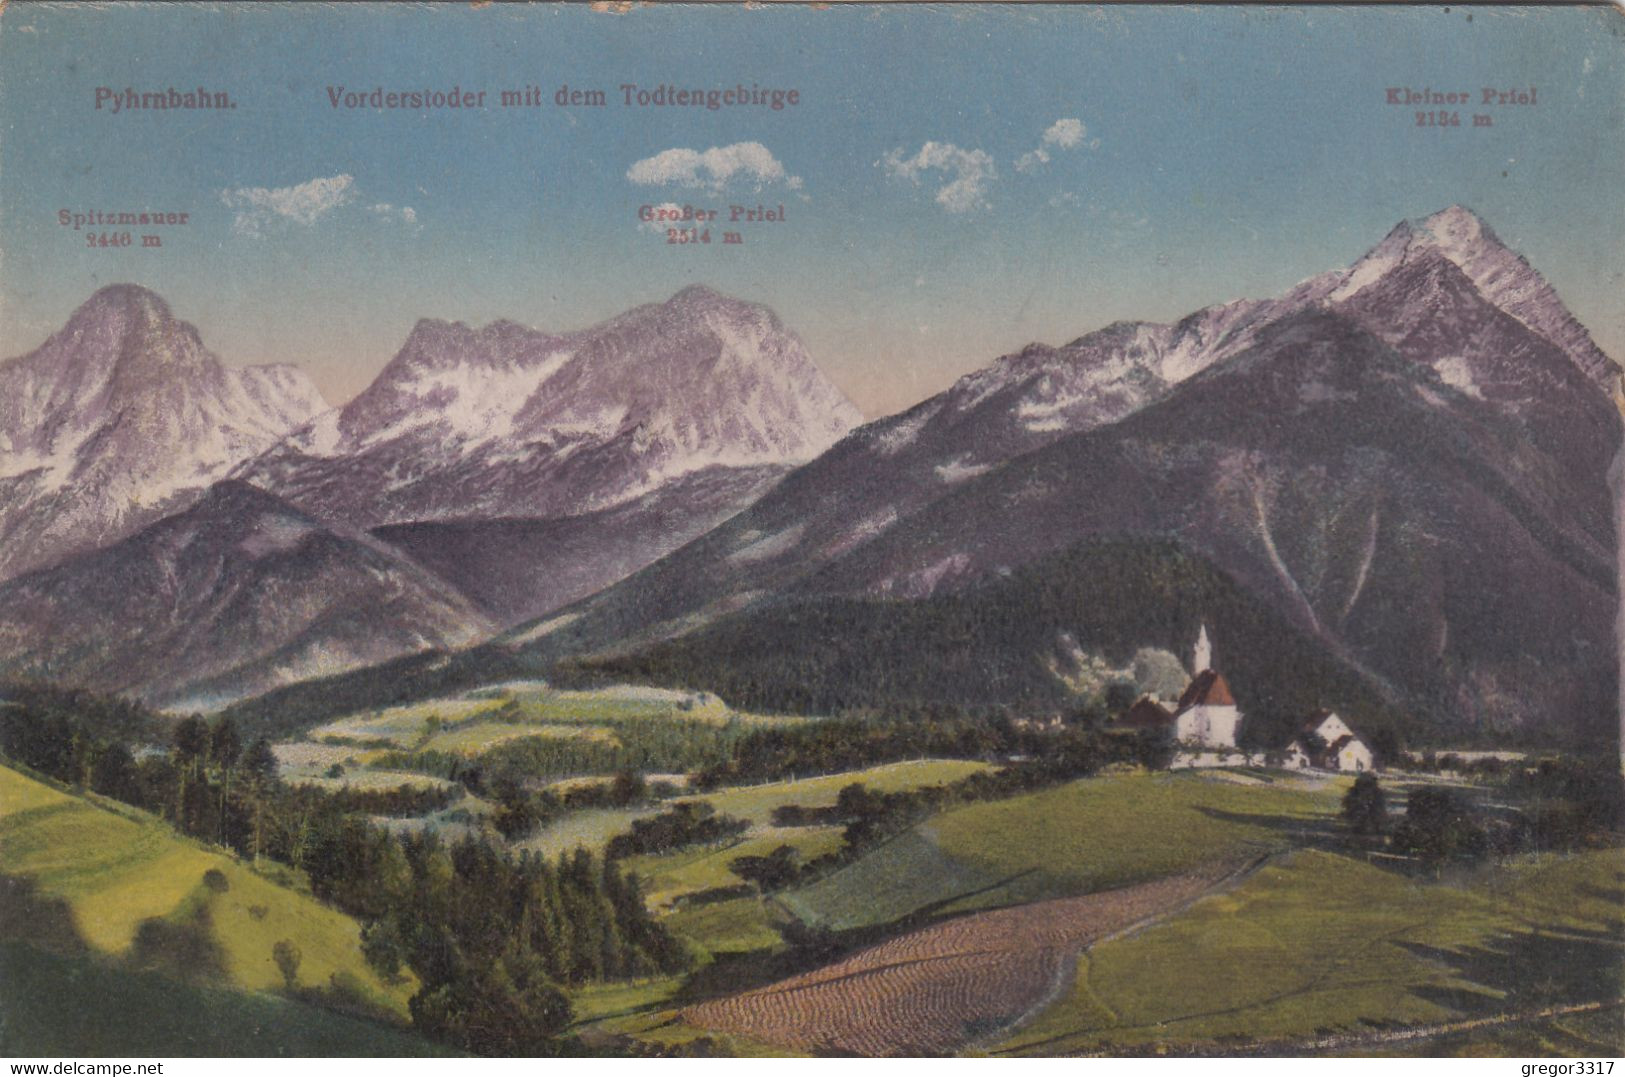 C240) VORDERSTODER Mit Dem Todtengebirge - Pyhrnbahn - KIRCHE U. Haus Mit Feldern U. Bergen  Brandt No. 1496e - 1911 - Hinterstoder